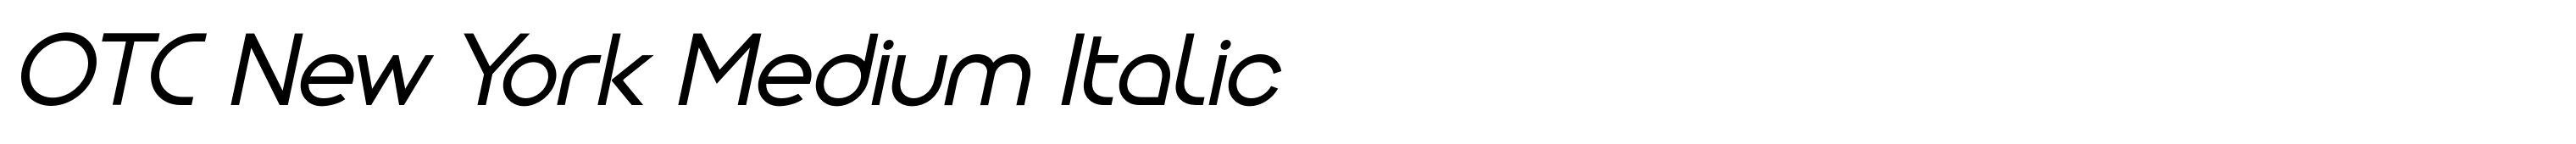 OTC New York Medium Italic